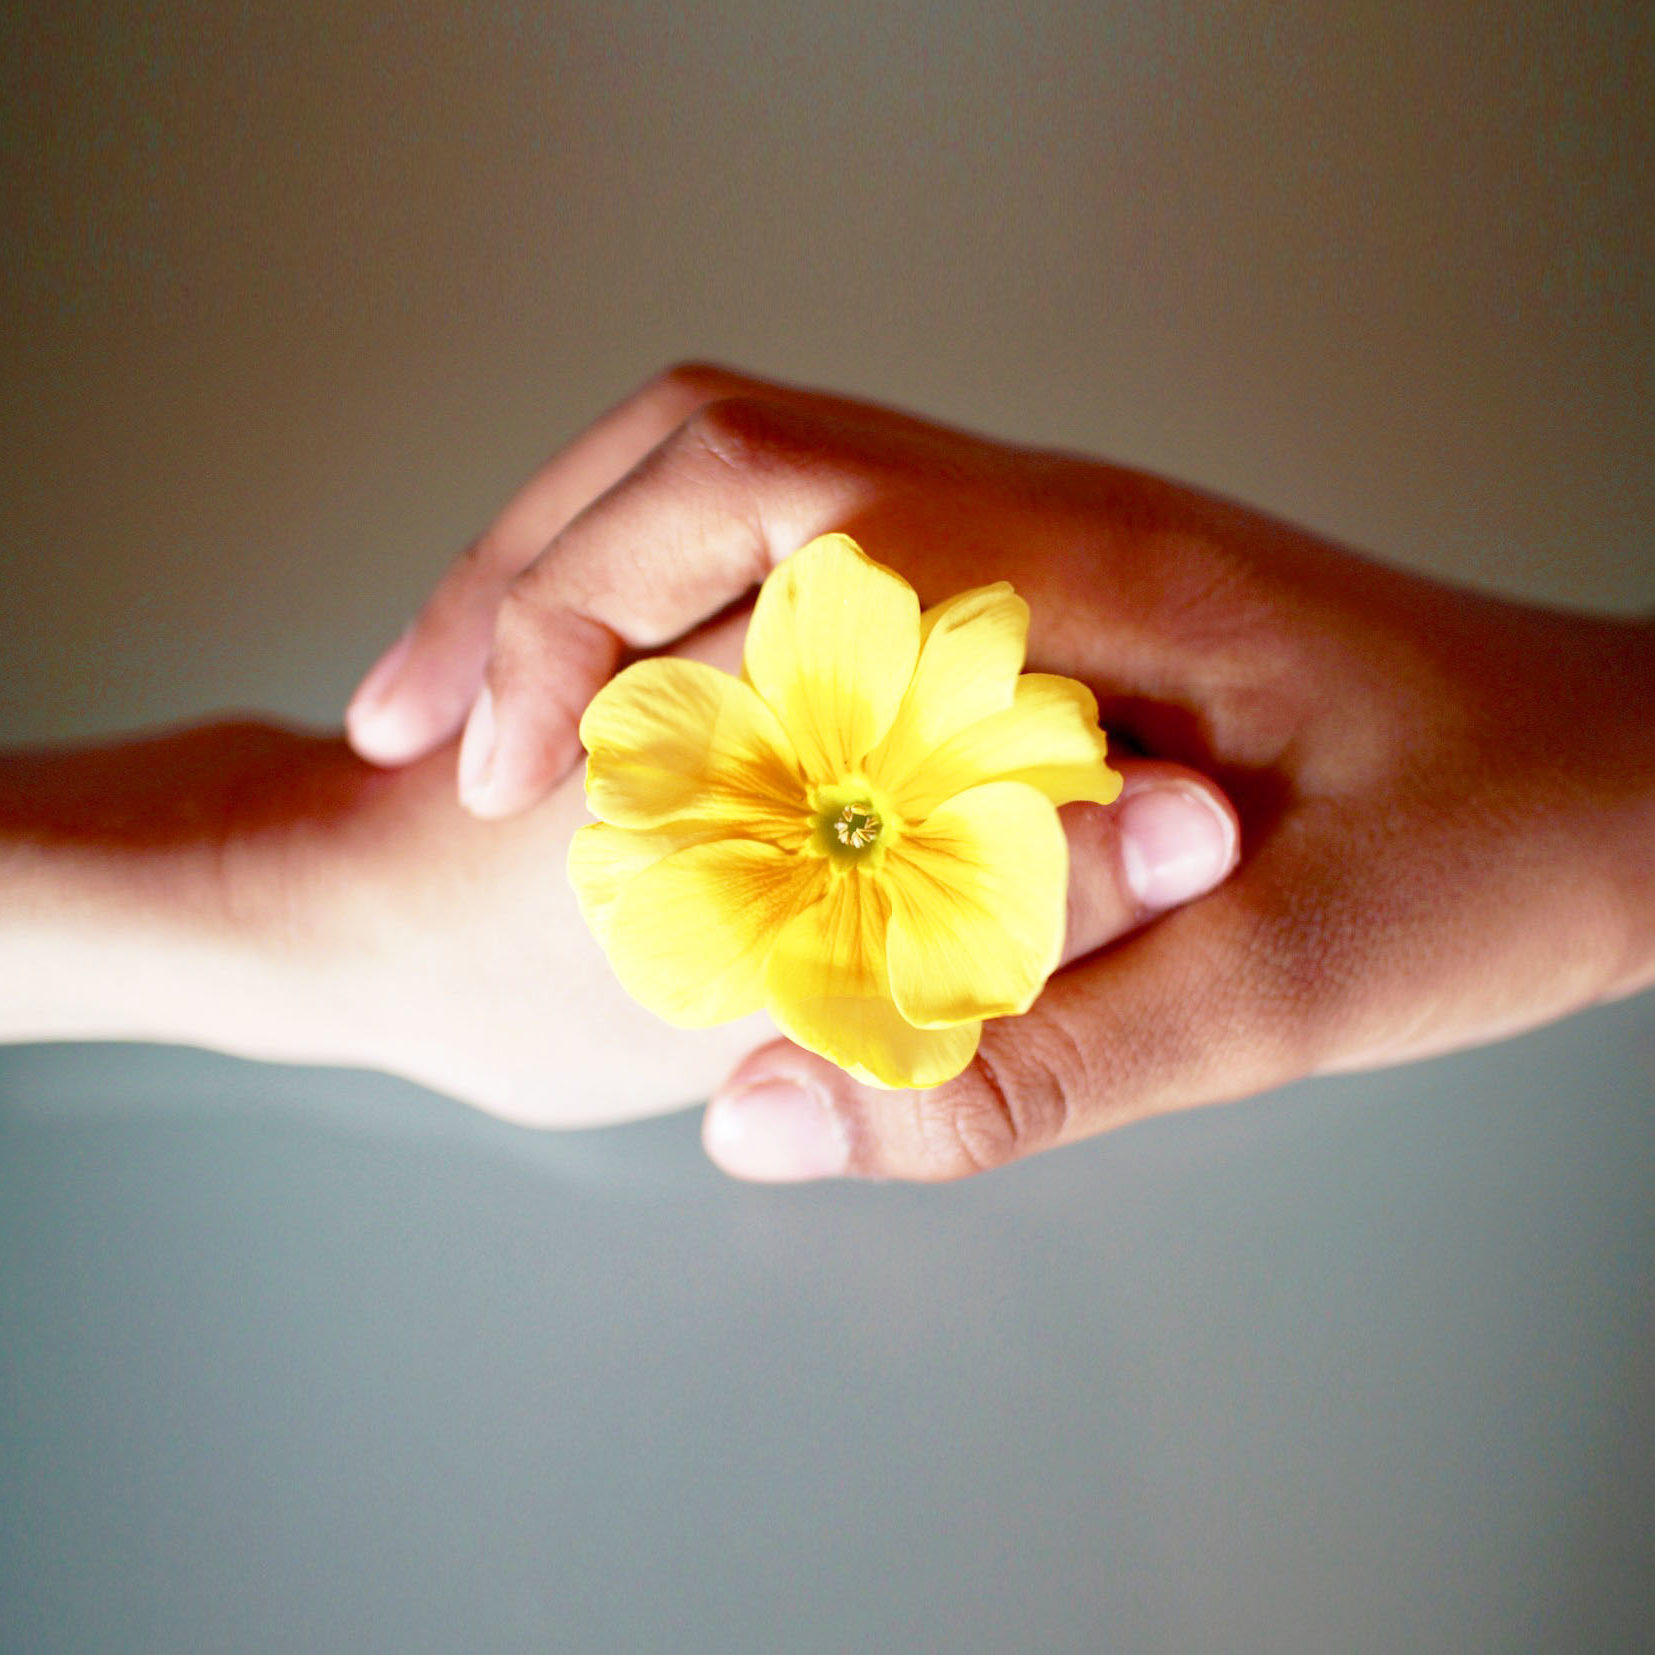 Manos con flor amarilla, apoyo emocional